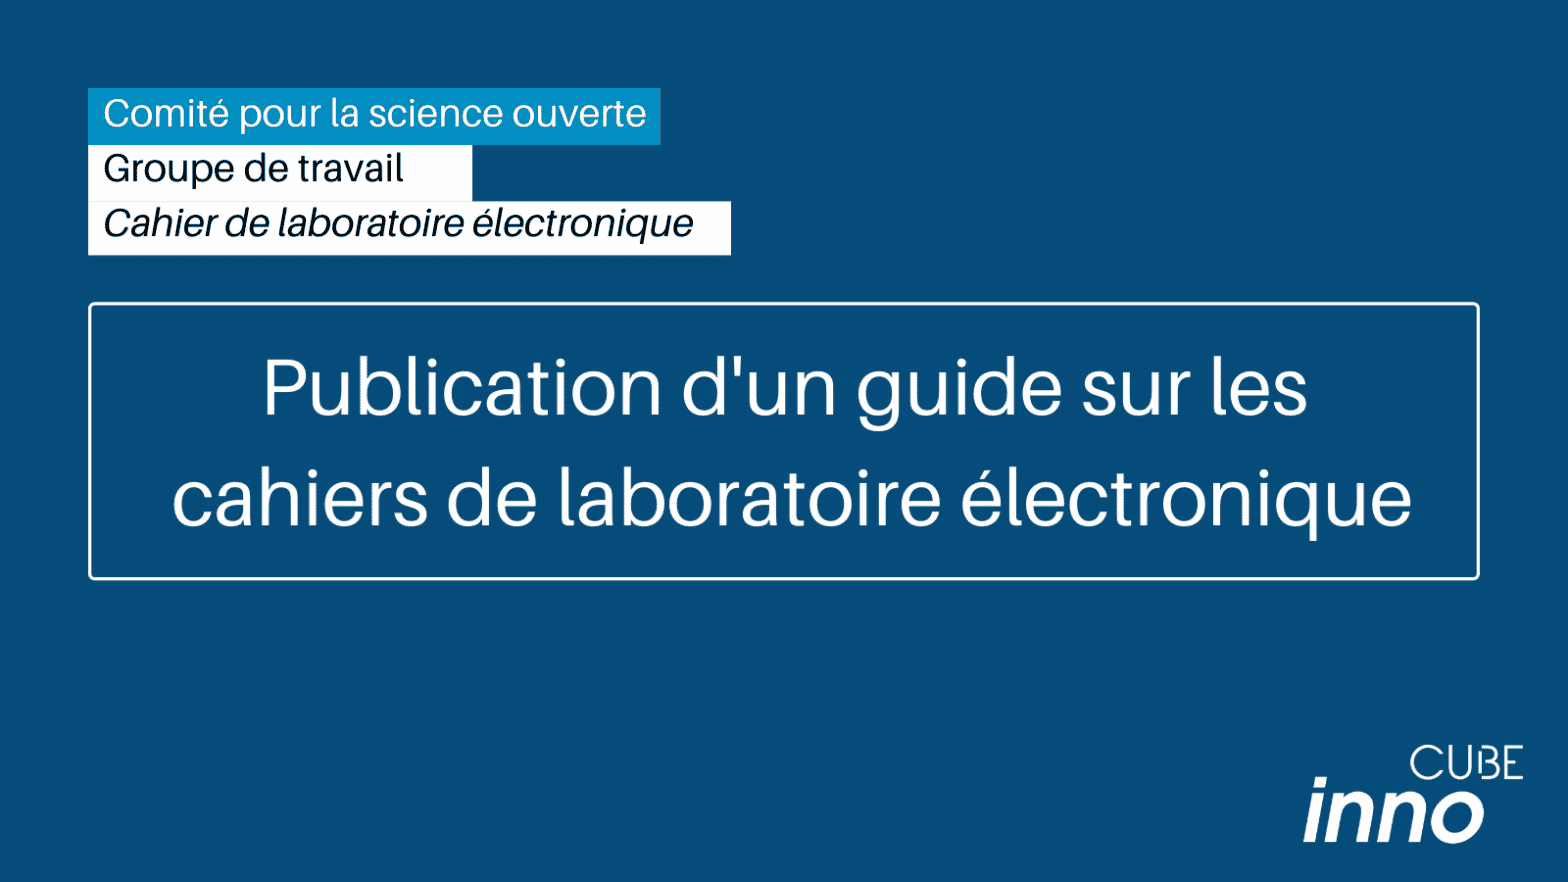 Publication d’un guide sur les cahiers de laboratoire électronique en Recherche